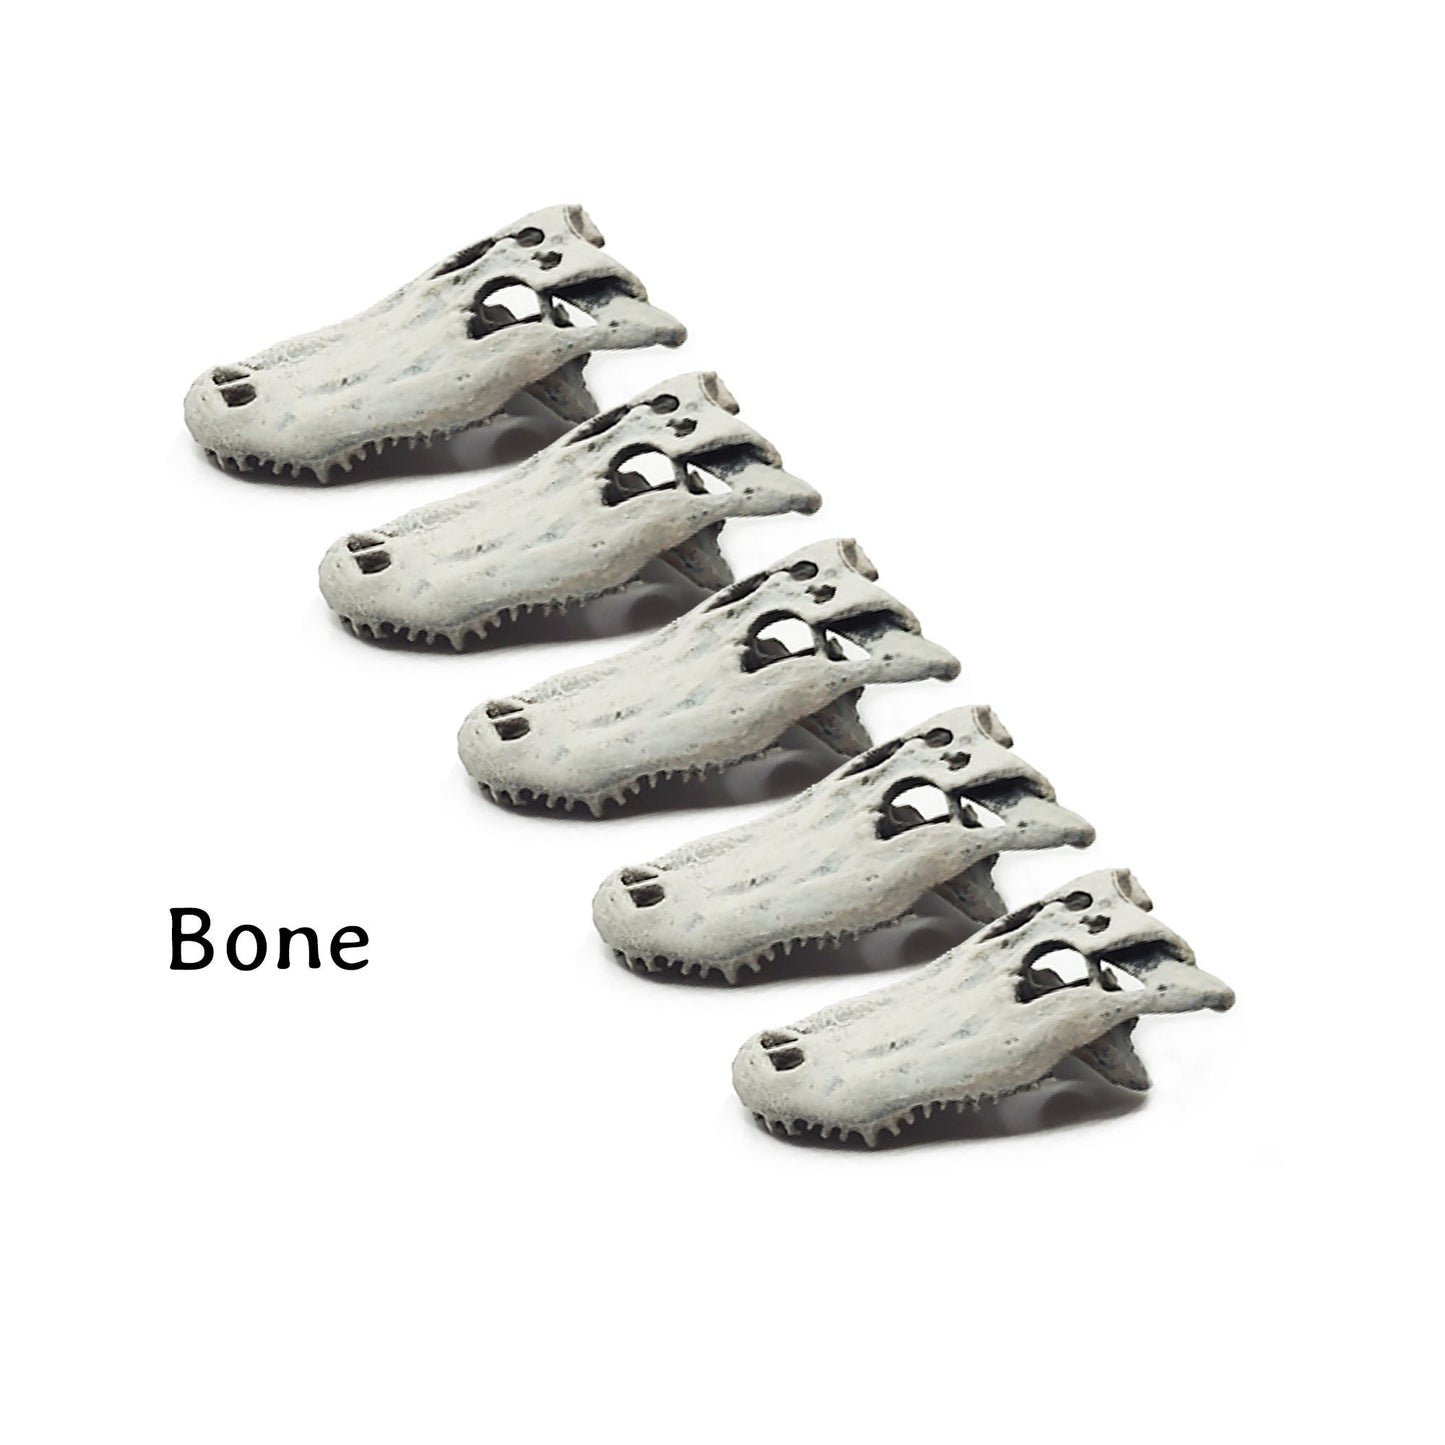 Alligator Skull - 1:12 scale (5 skulls)